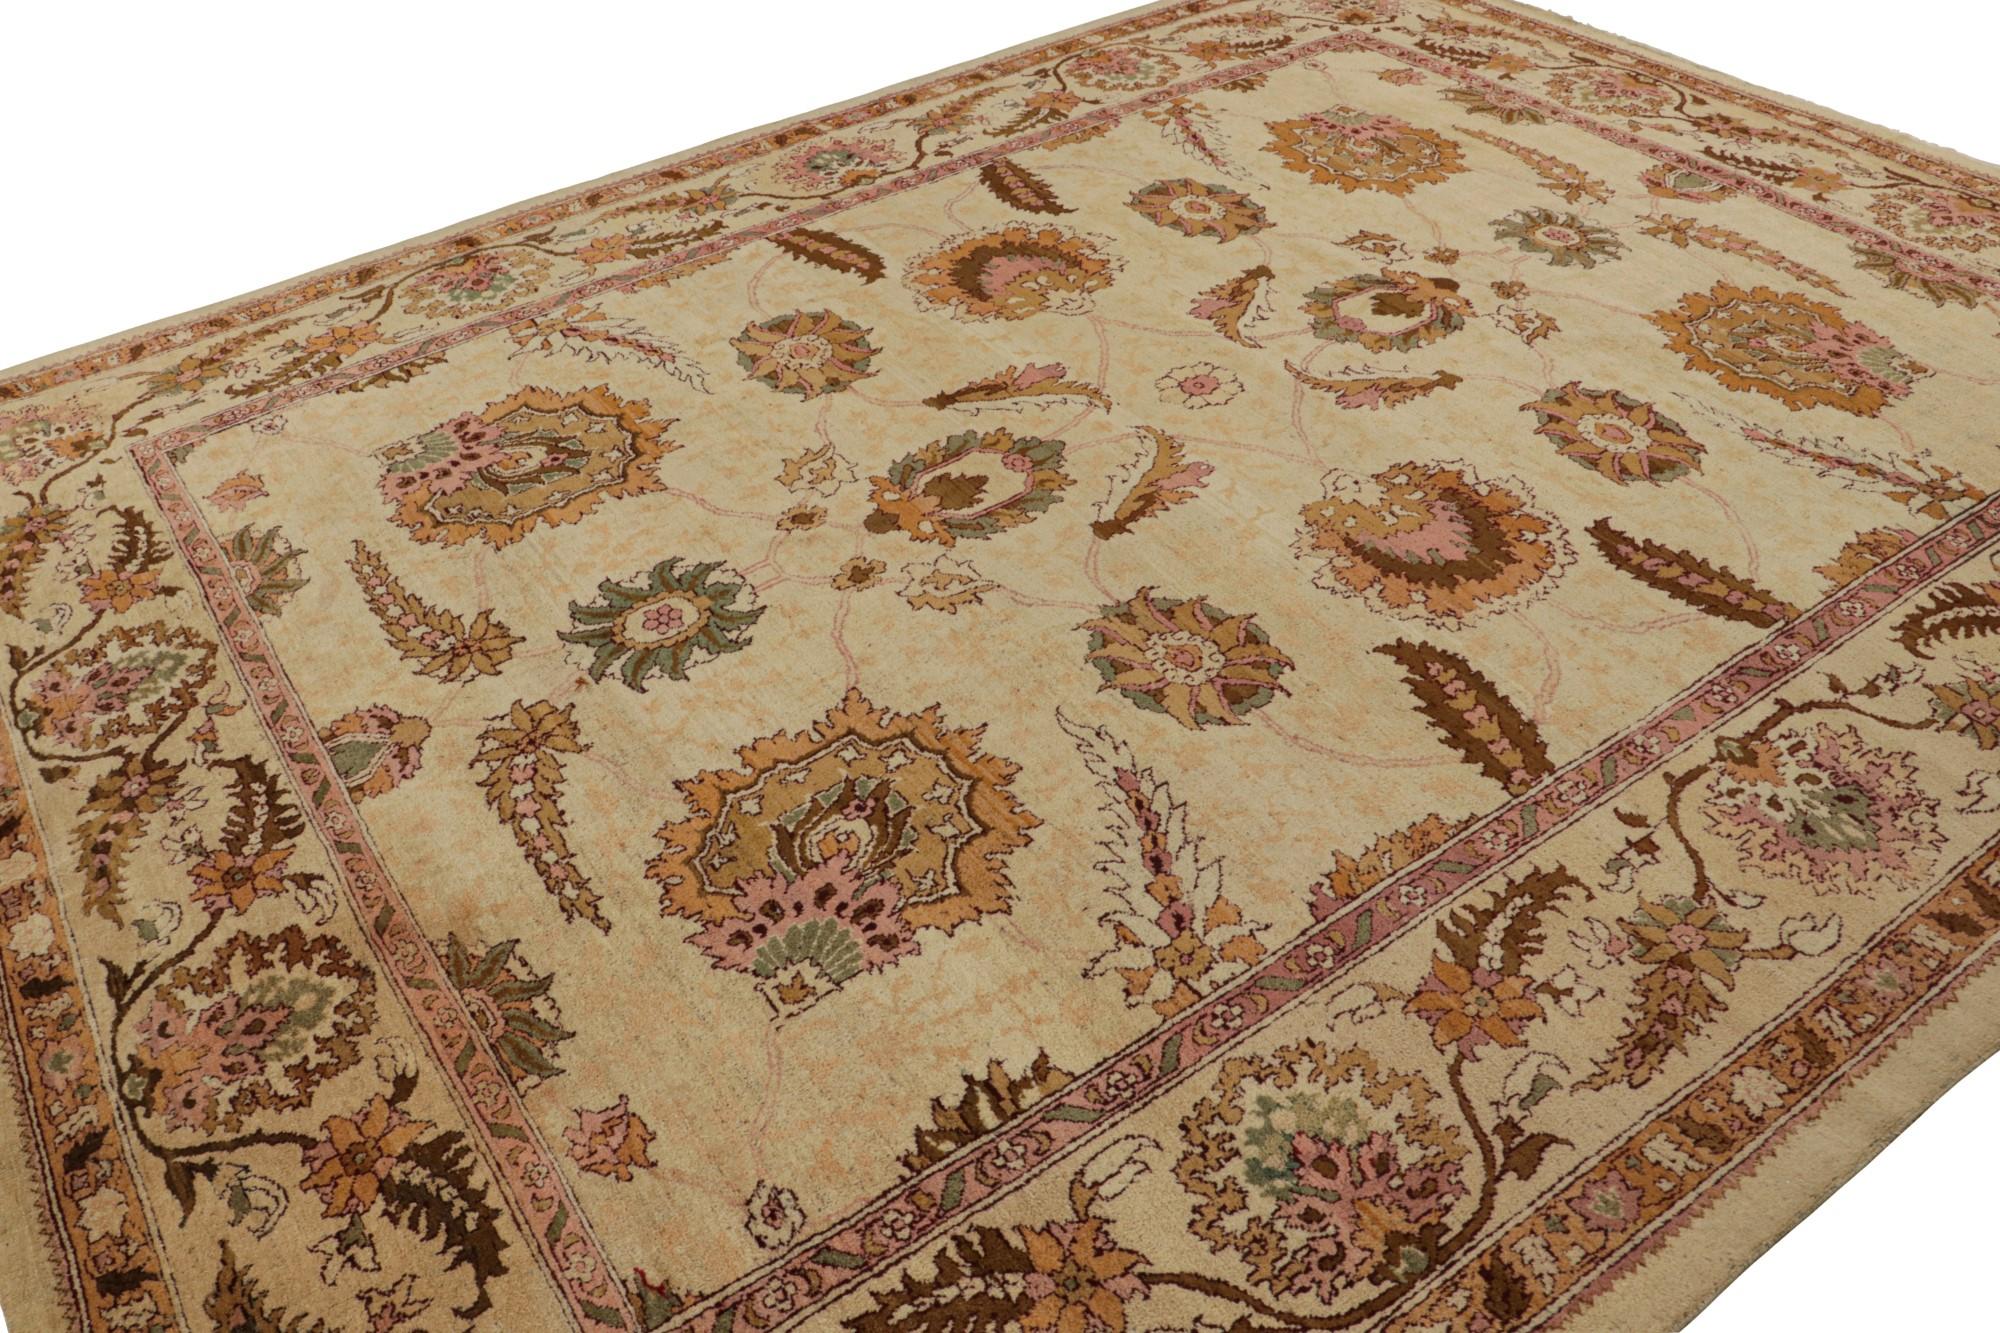 Handgeknüpft in Wolle aus Indien ca. 1890-1900, diese 10x12 antiken Teppich stellt eine seltene großformatige Agra Teppich von weiteren außergewöhnlichen Farbe und raffinierte Muster-revered unter den begehrtesten klassischen Teppich Familien selten